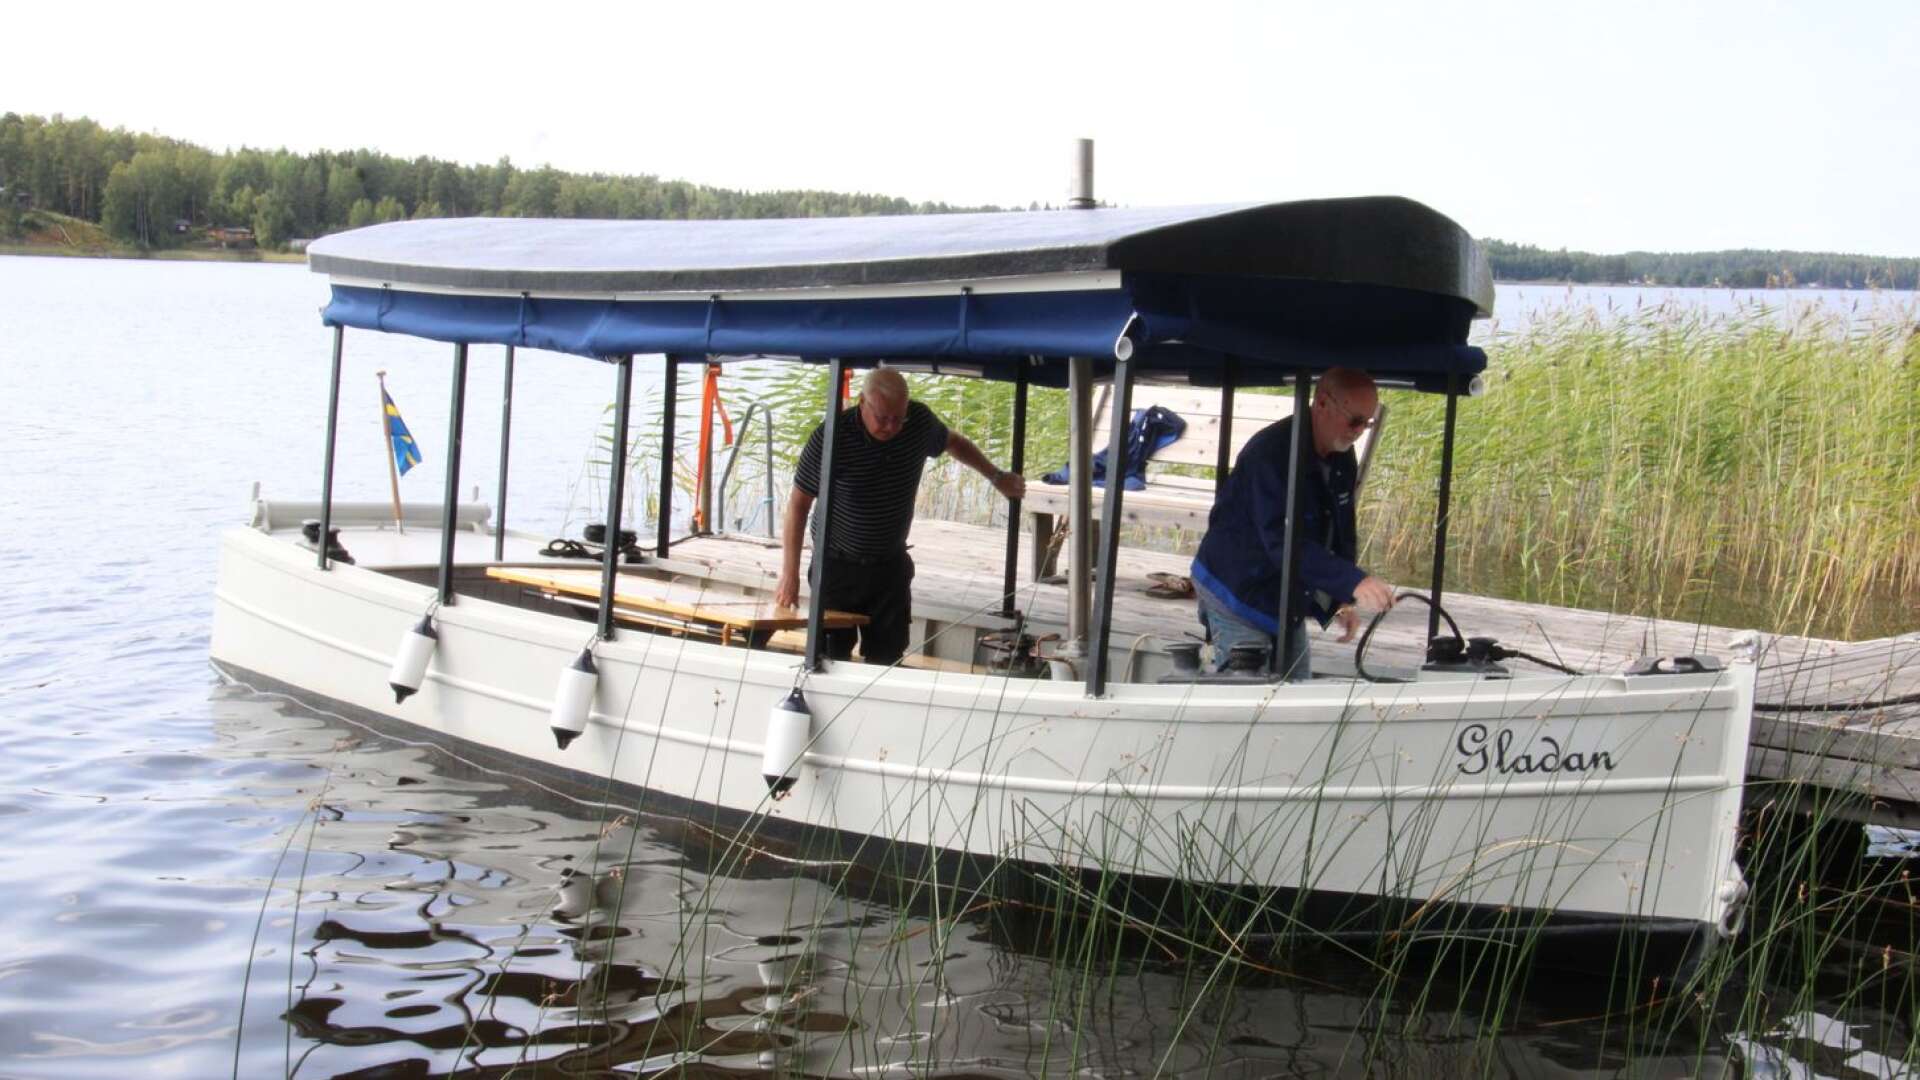 Timmerbåten Gladan har renoverats och återställts i originalskick av entusiasterna Rolf Fransson och Benny Stolpe.